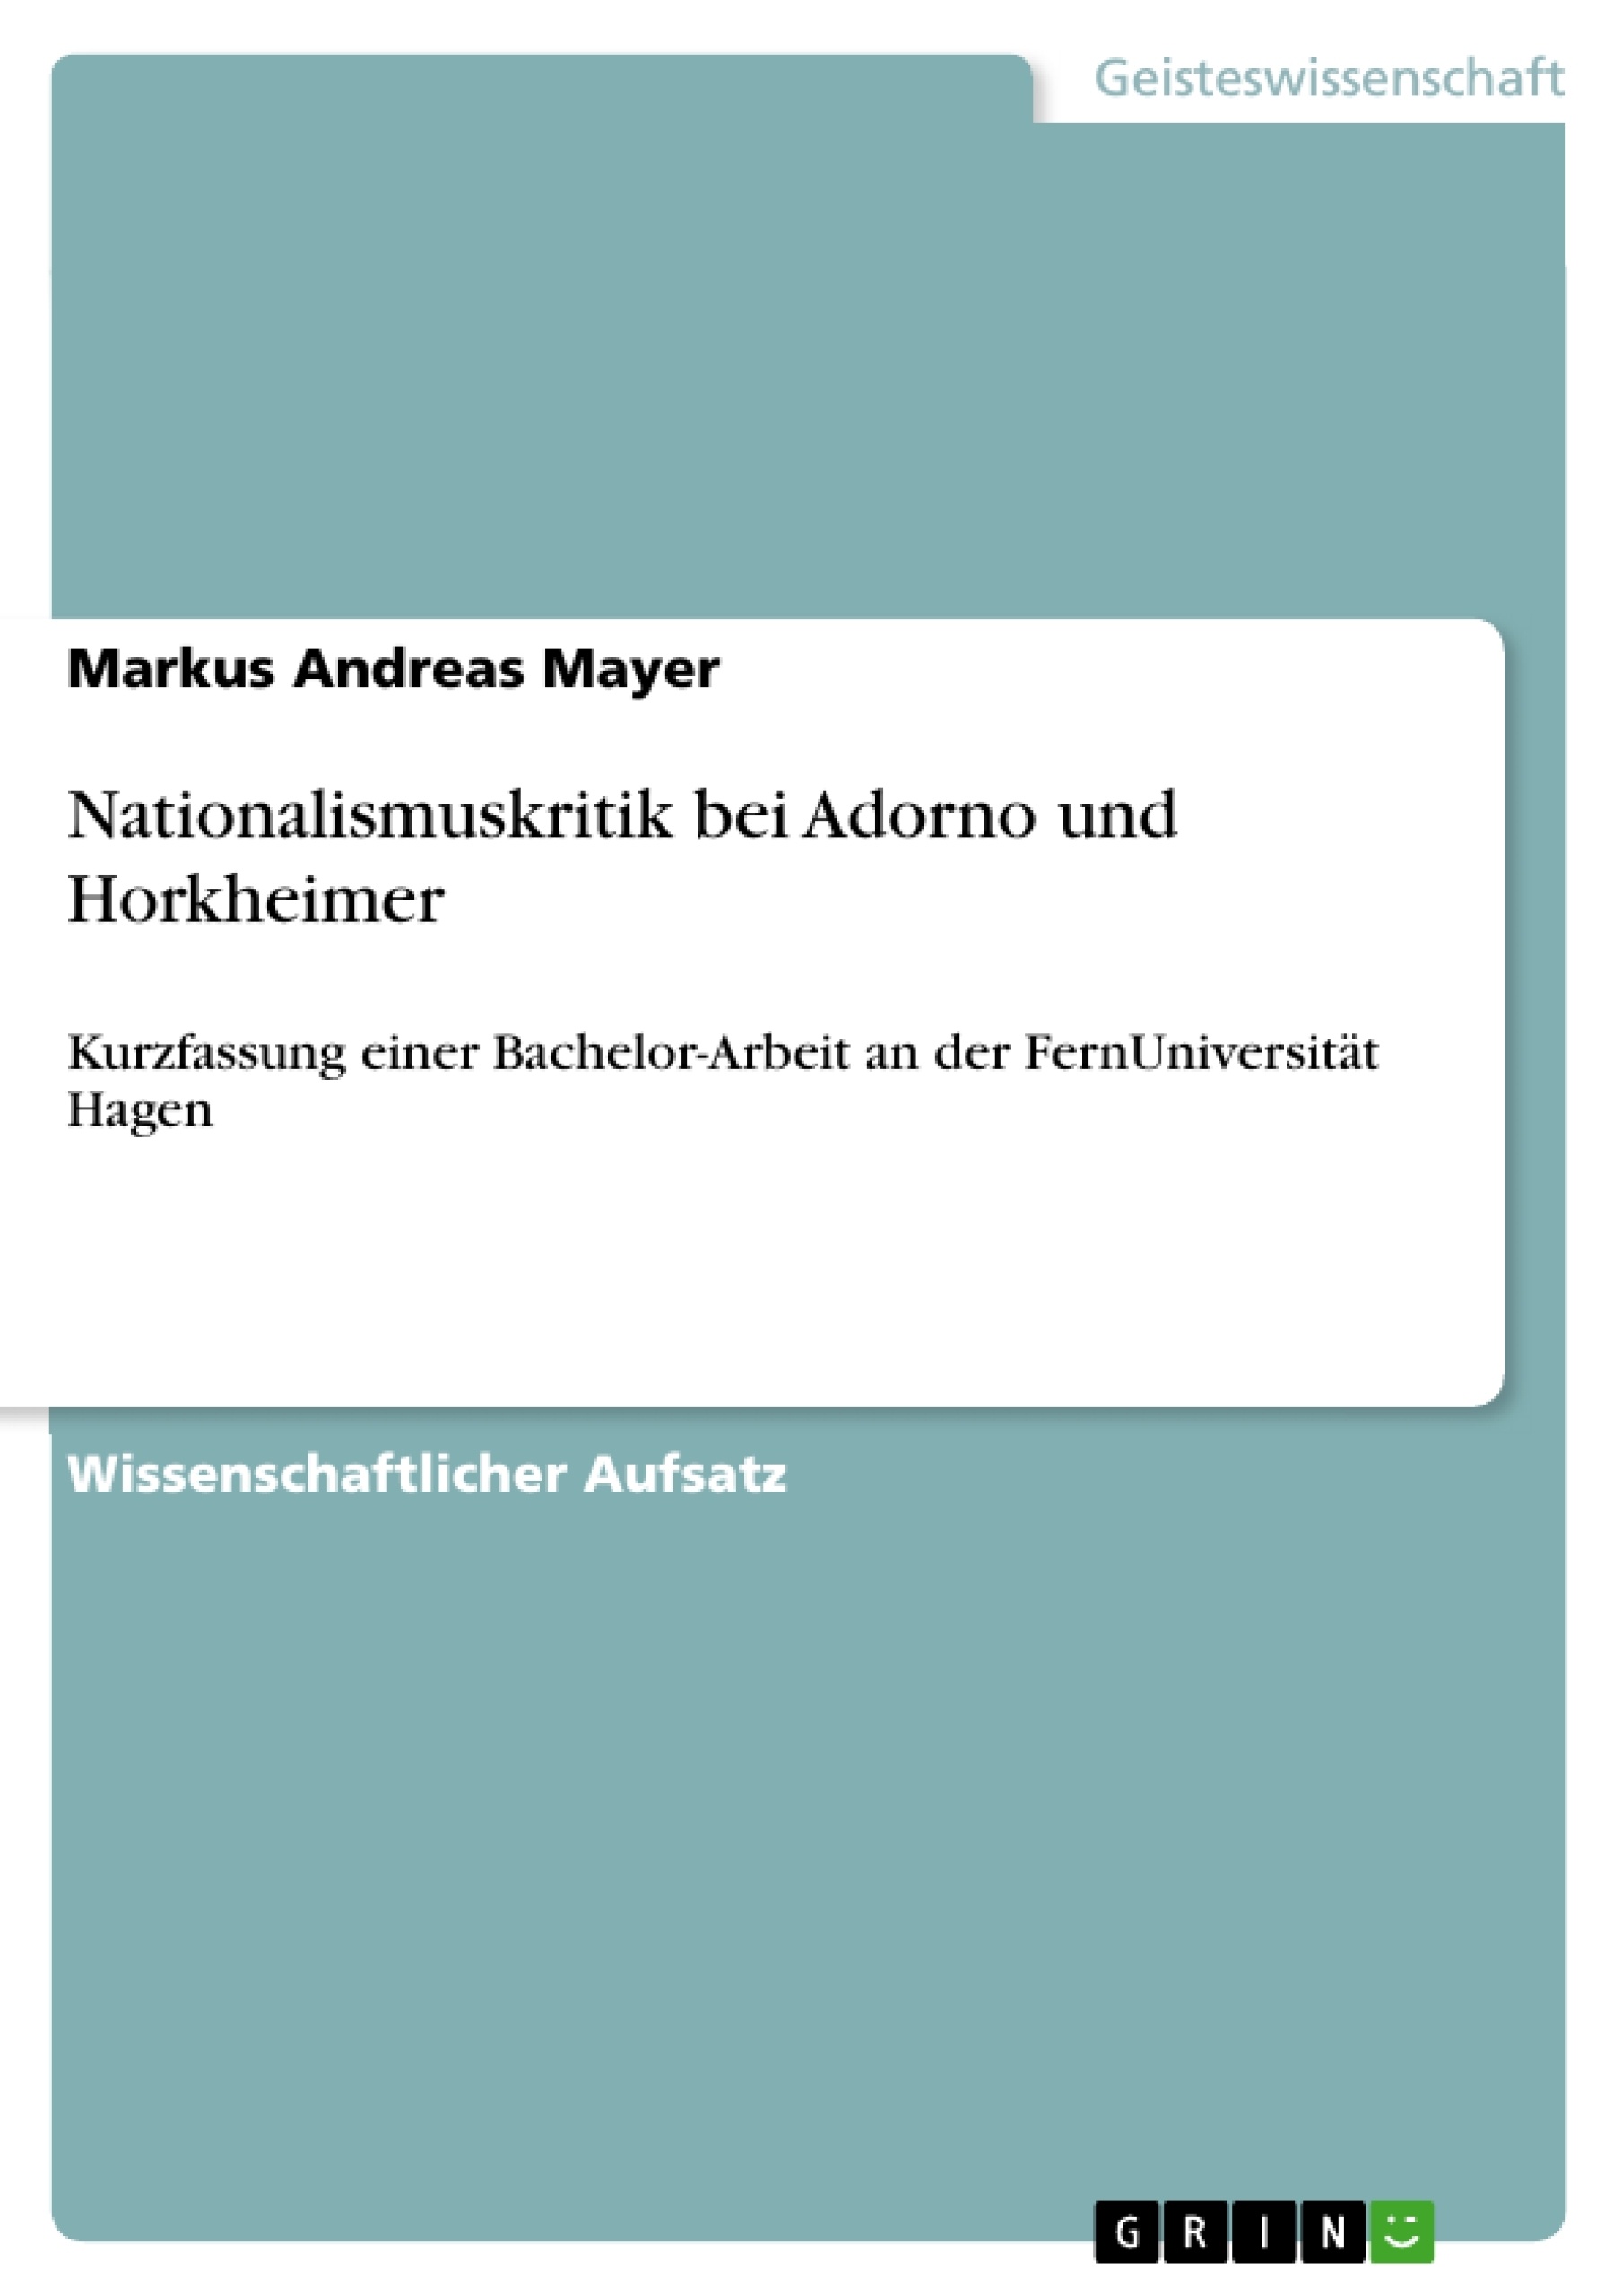 Título: Nationalismuskritik bei Adorno und Horkheimer